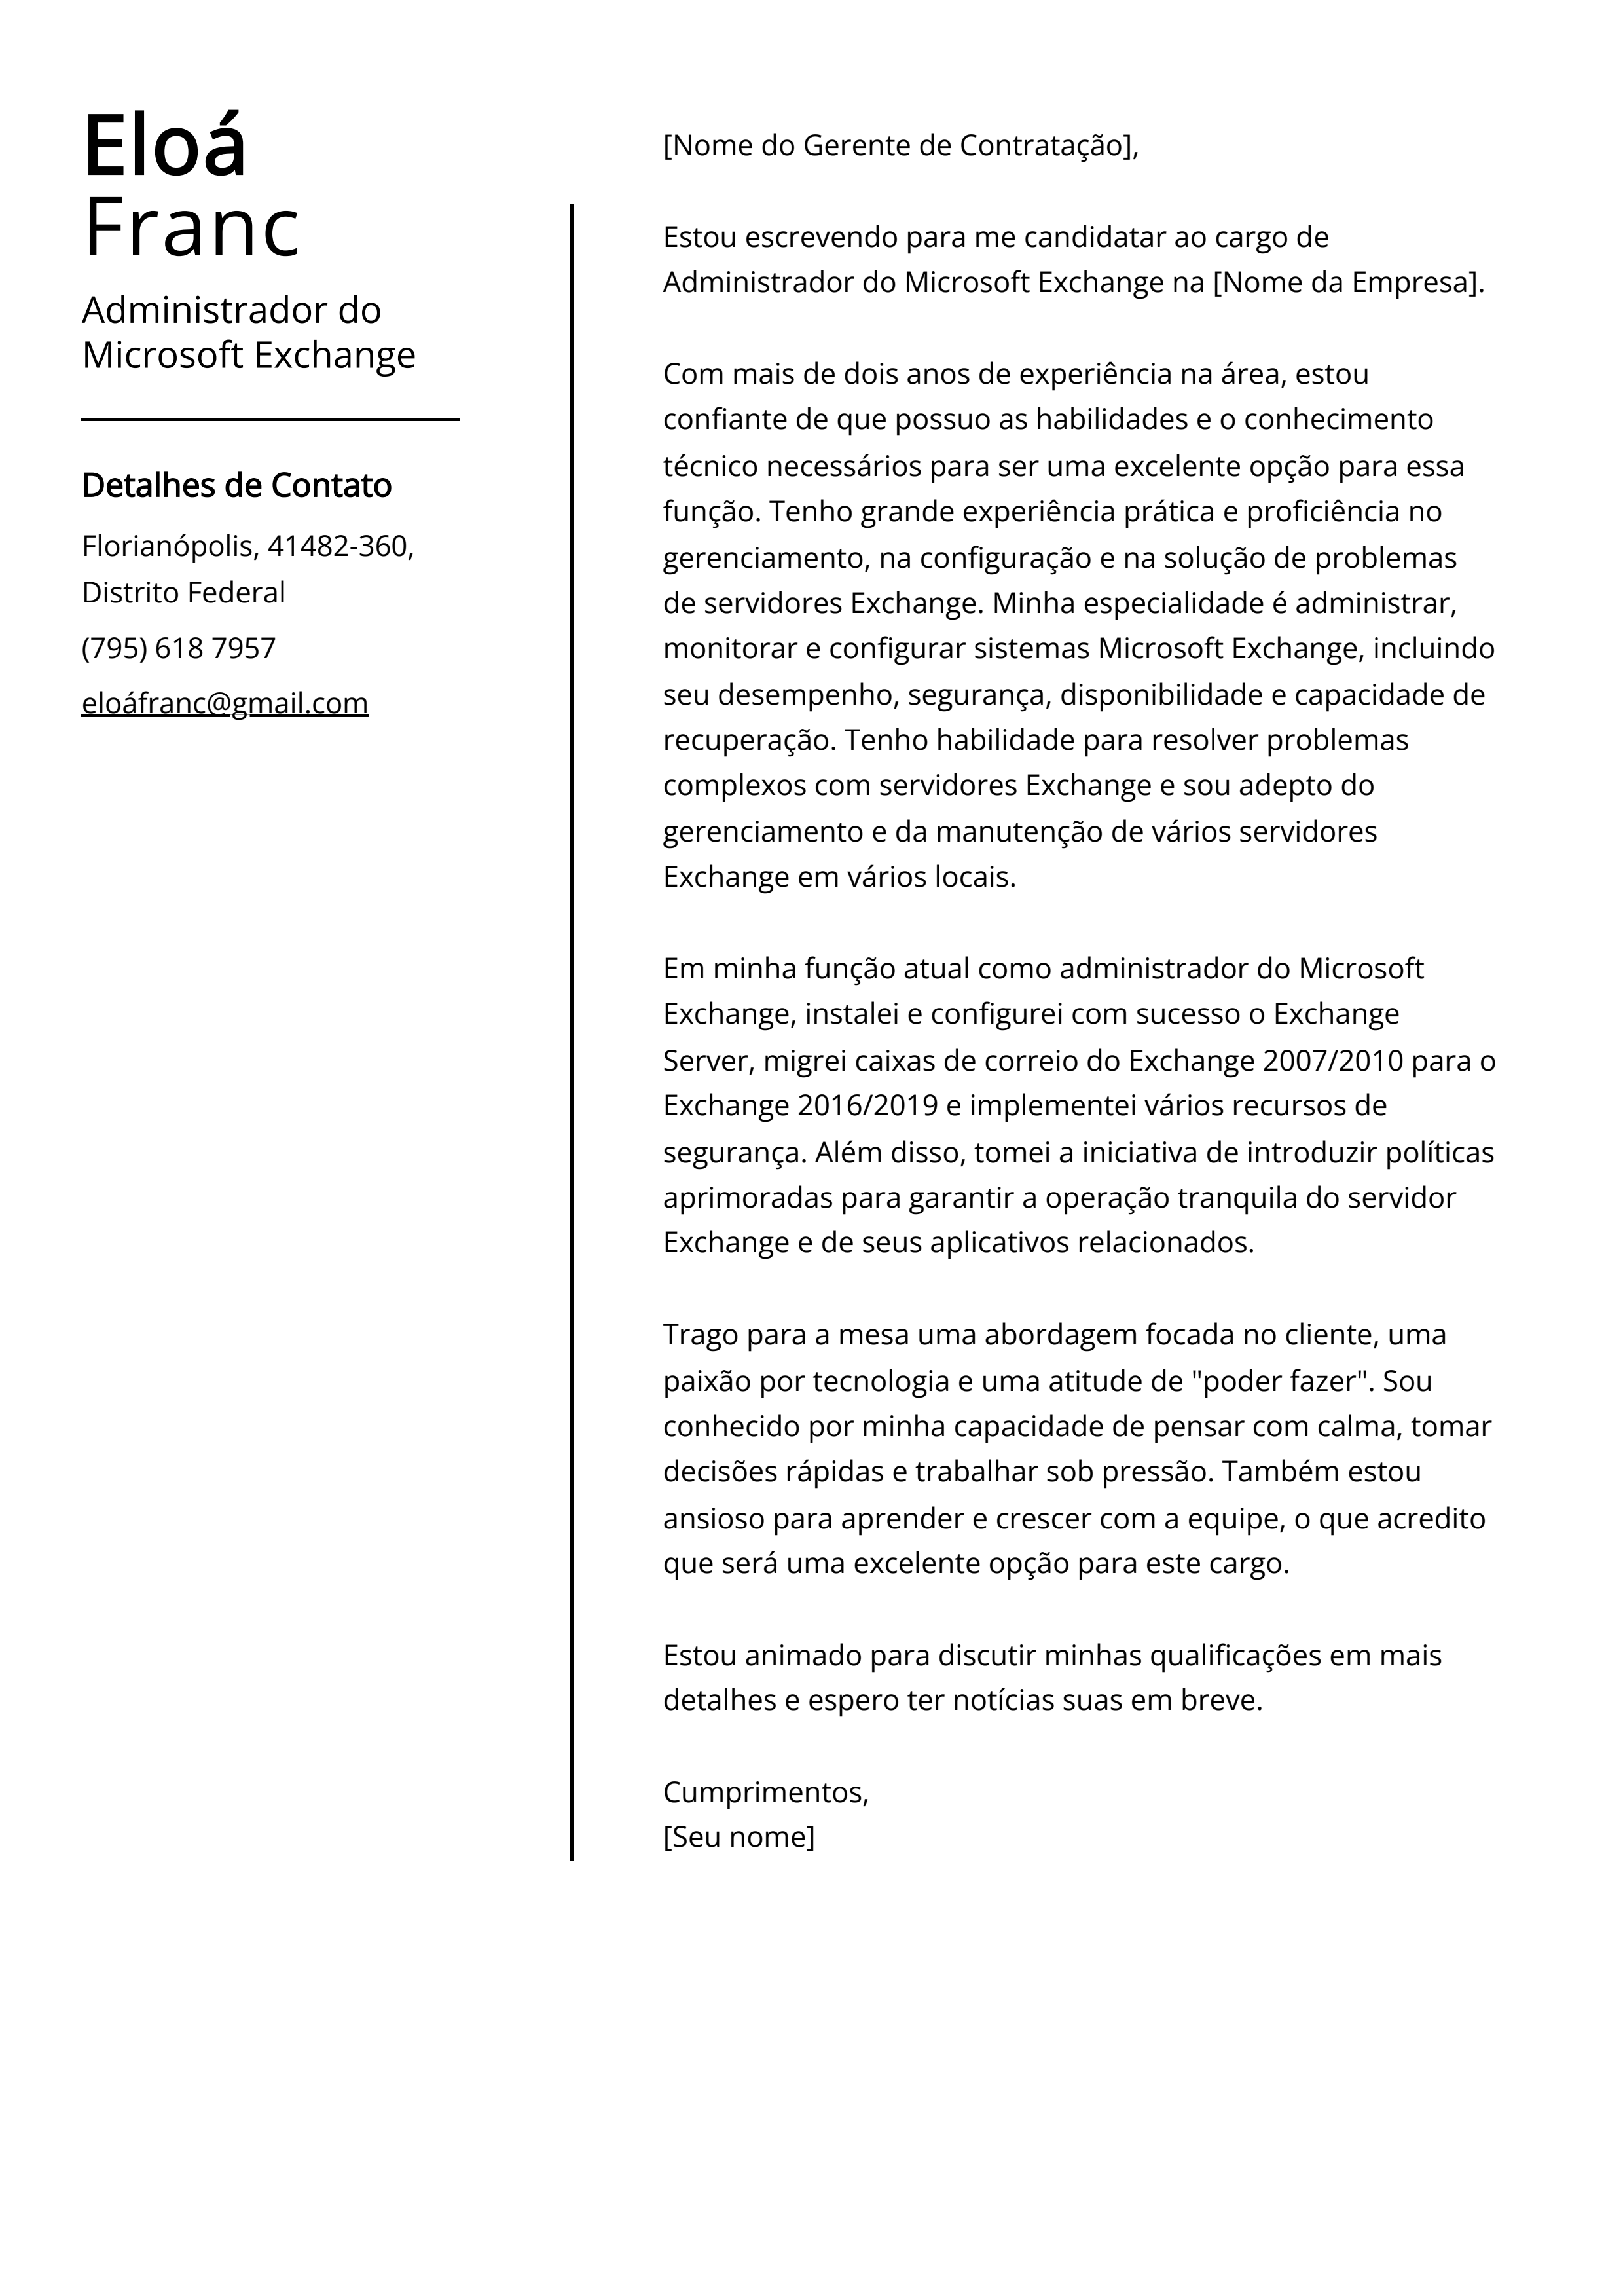 Exemplo de carta de apresentação do Administrador do Microsoft Exchange